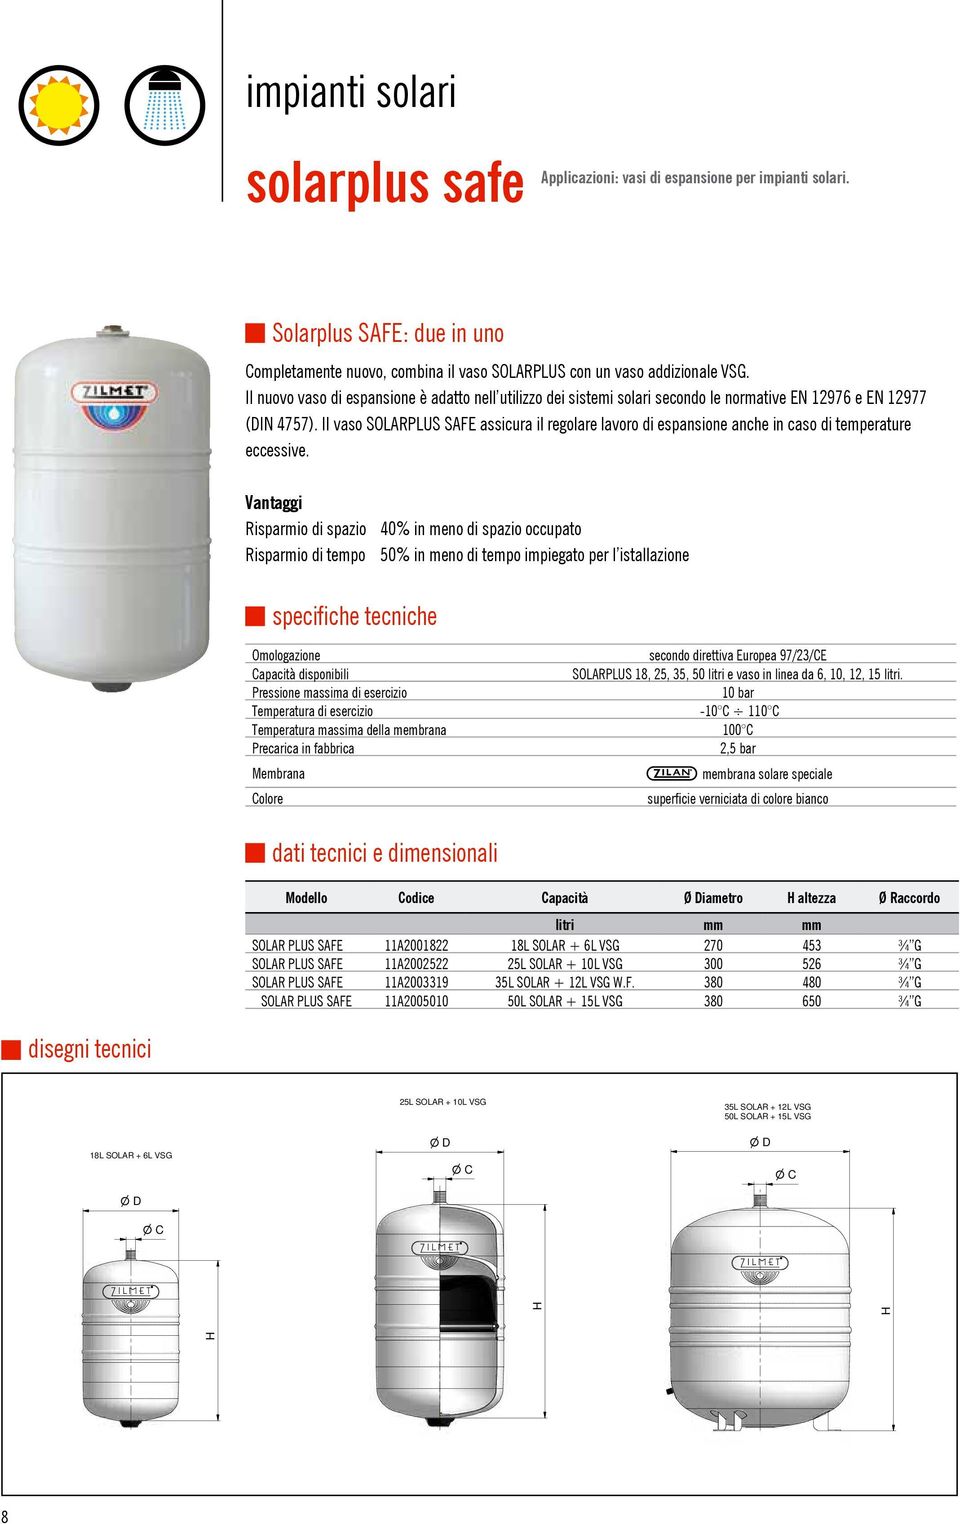 Il vaso SOLARPLUS SAFE assicura il regolare lavoro di espansione anche in caso di temperature eccessive.